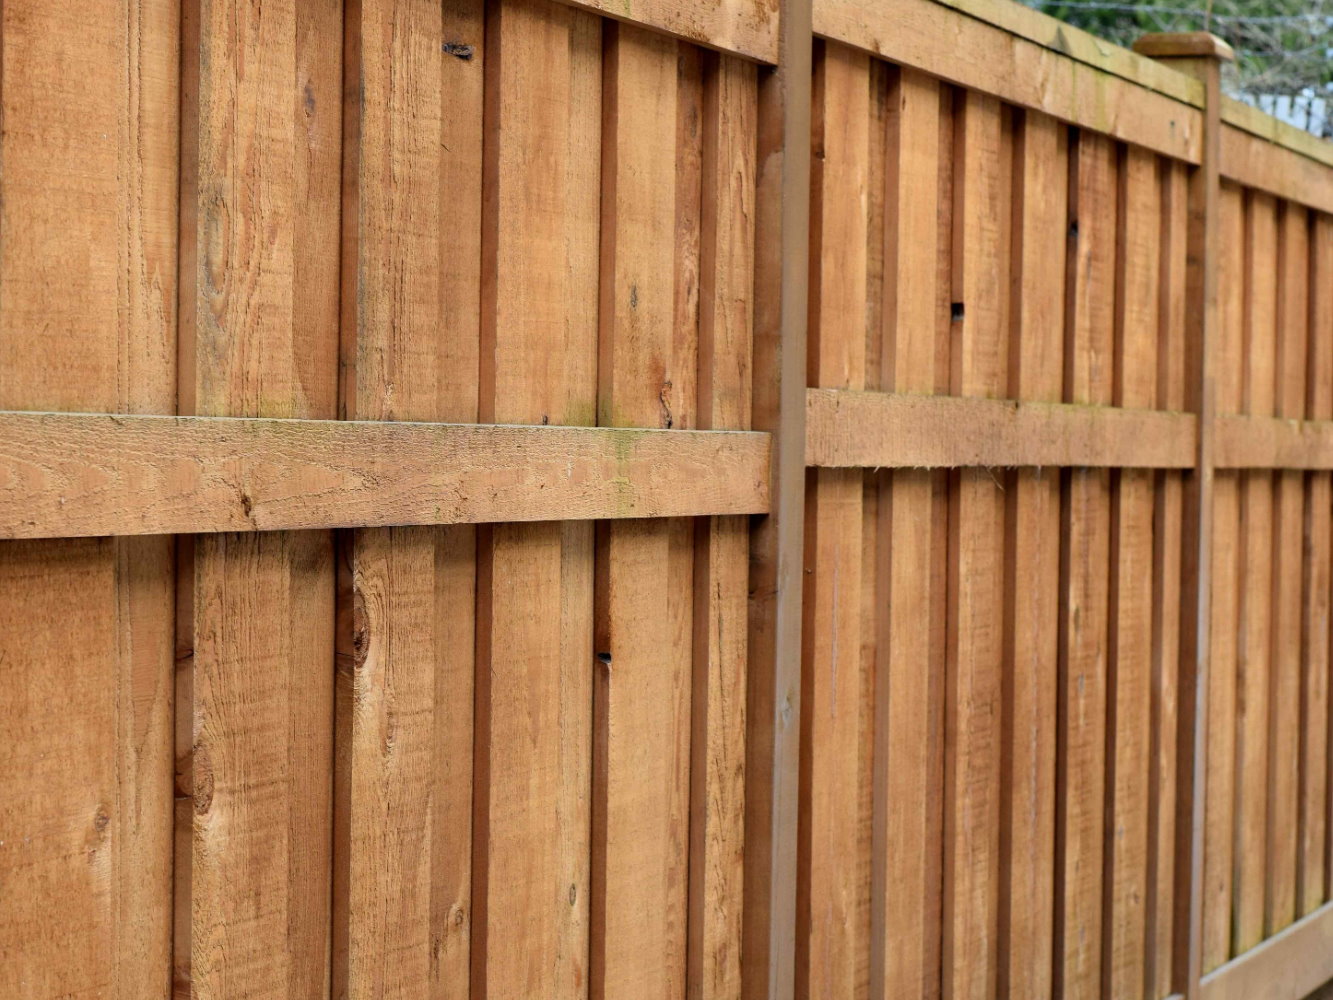 Lewisport KY Shadowbox style wood fence